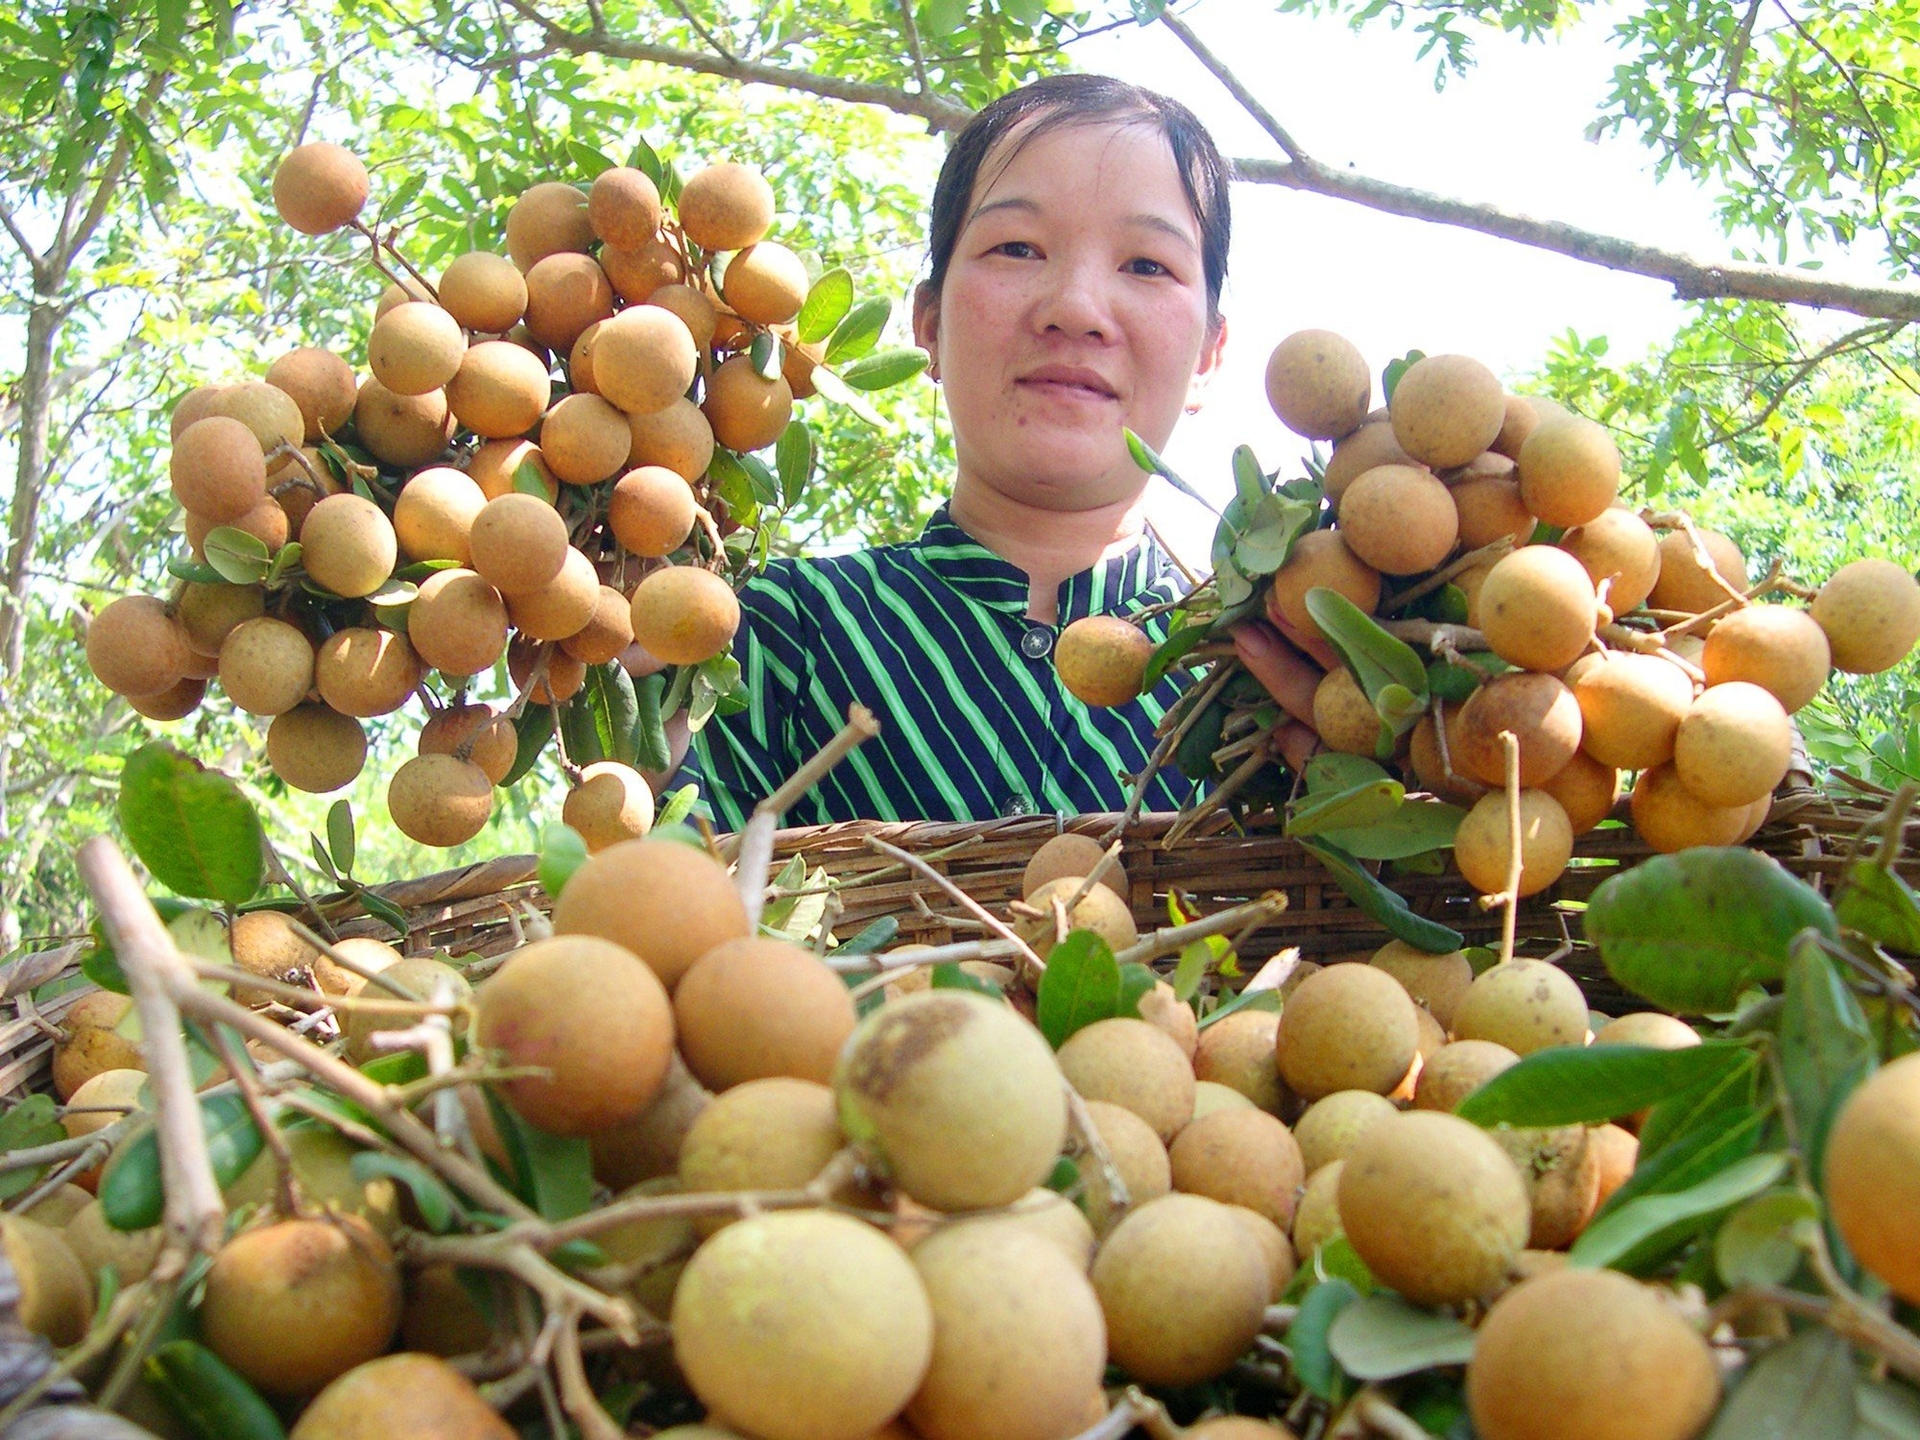 Trái thanh nhãn sản xuất tại HTX Cây ăn trái Thái Thanh ở huyện Cờ Đỏ cho chất lượng ngon đặc biệt. Ảnh: Lê Hoàng Vũ.